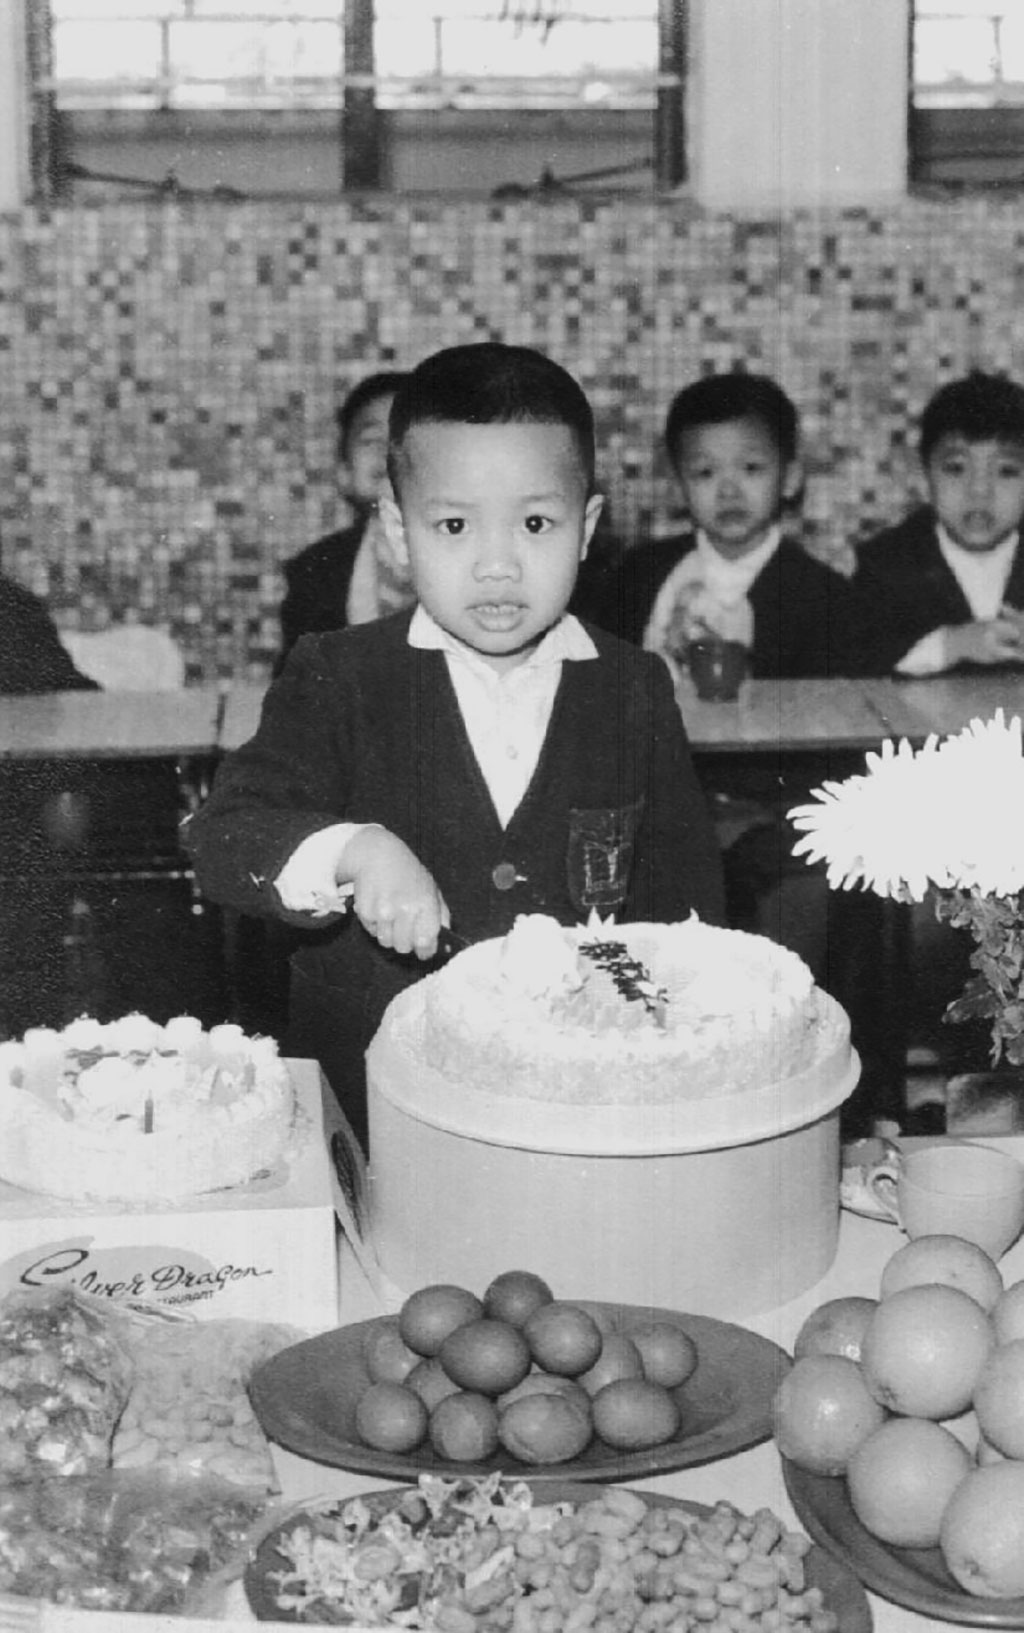 Un jeune garçon en costume regarde la caméra alors qu’il coupe un gros gâteau d’anniversaire.